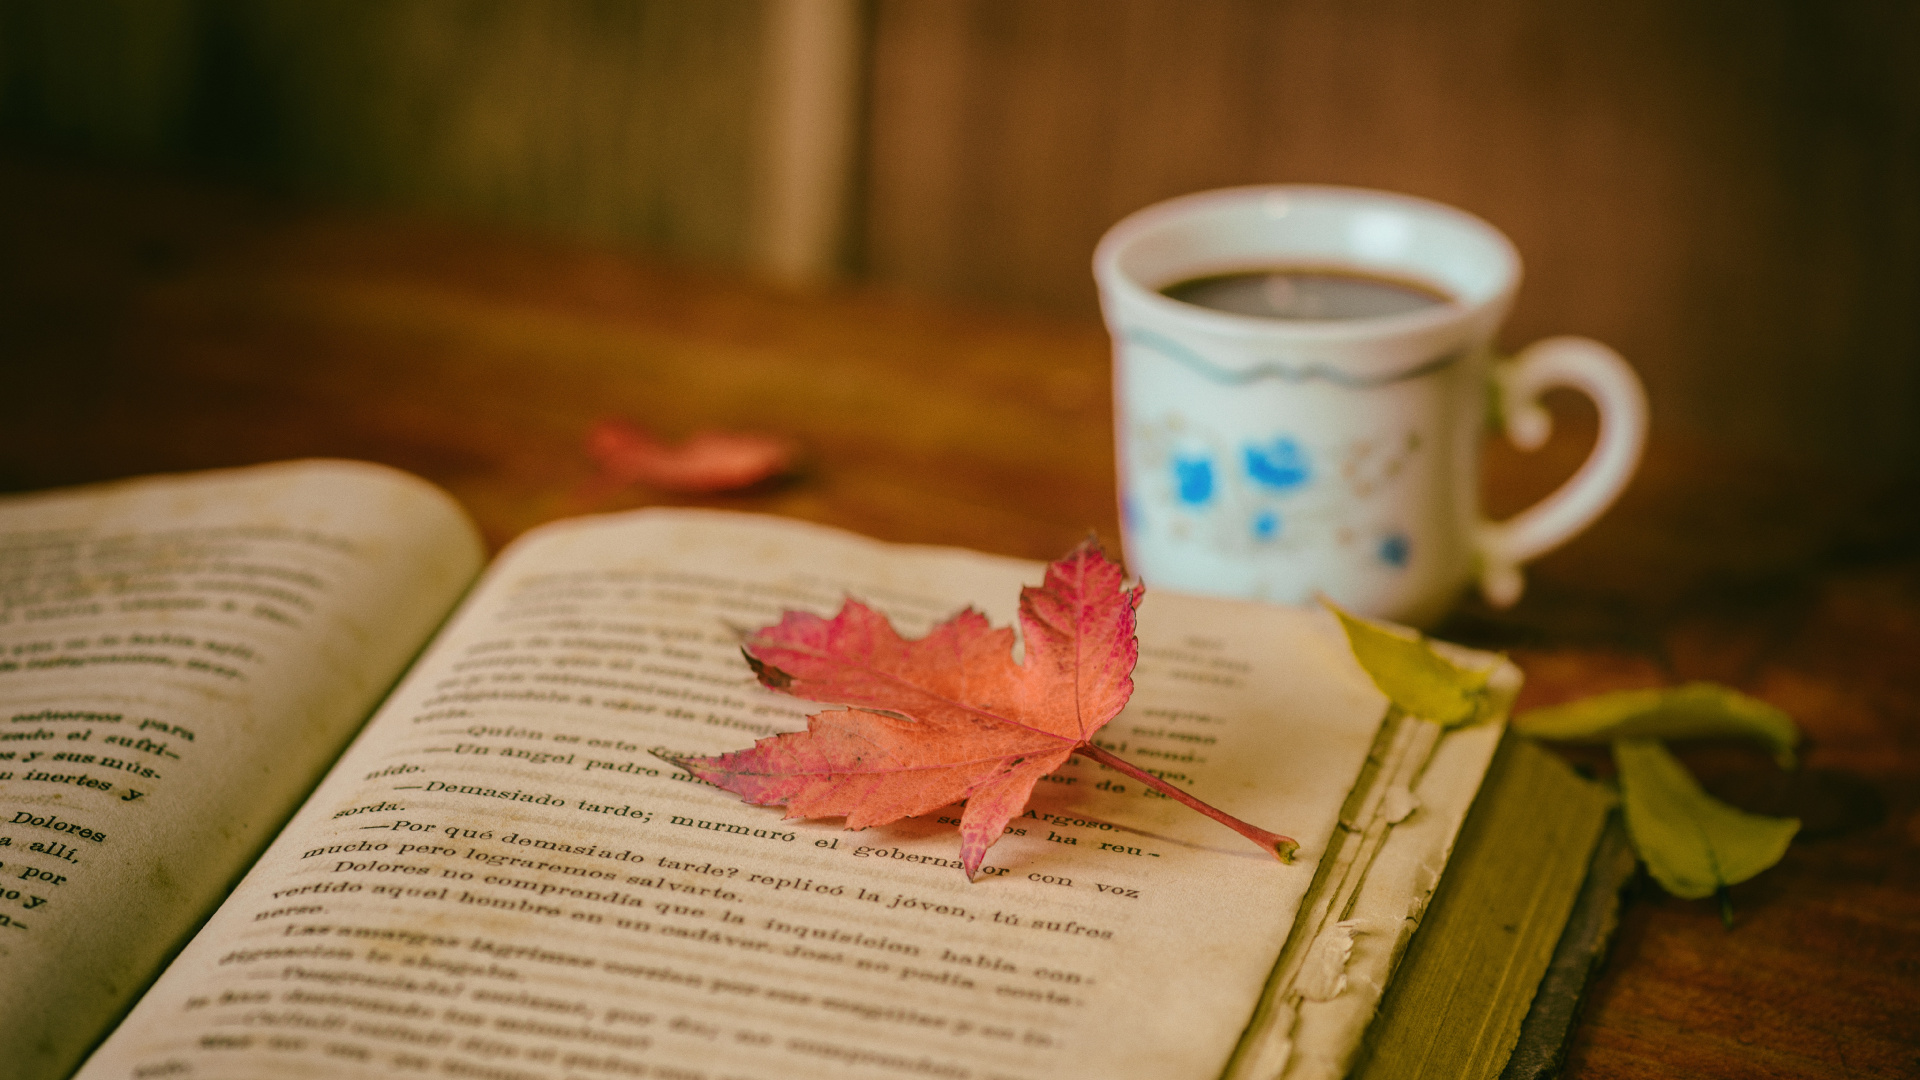 本书, 书评, 阅读, 咖啡杯, 粉红色 壁纸 1920x1080 允许